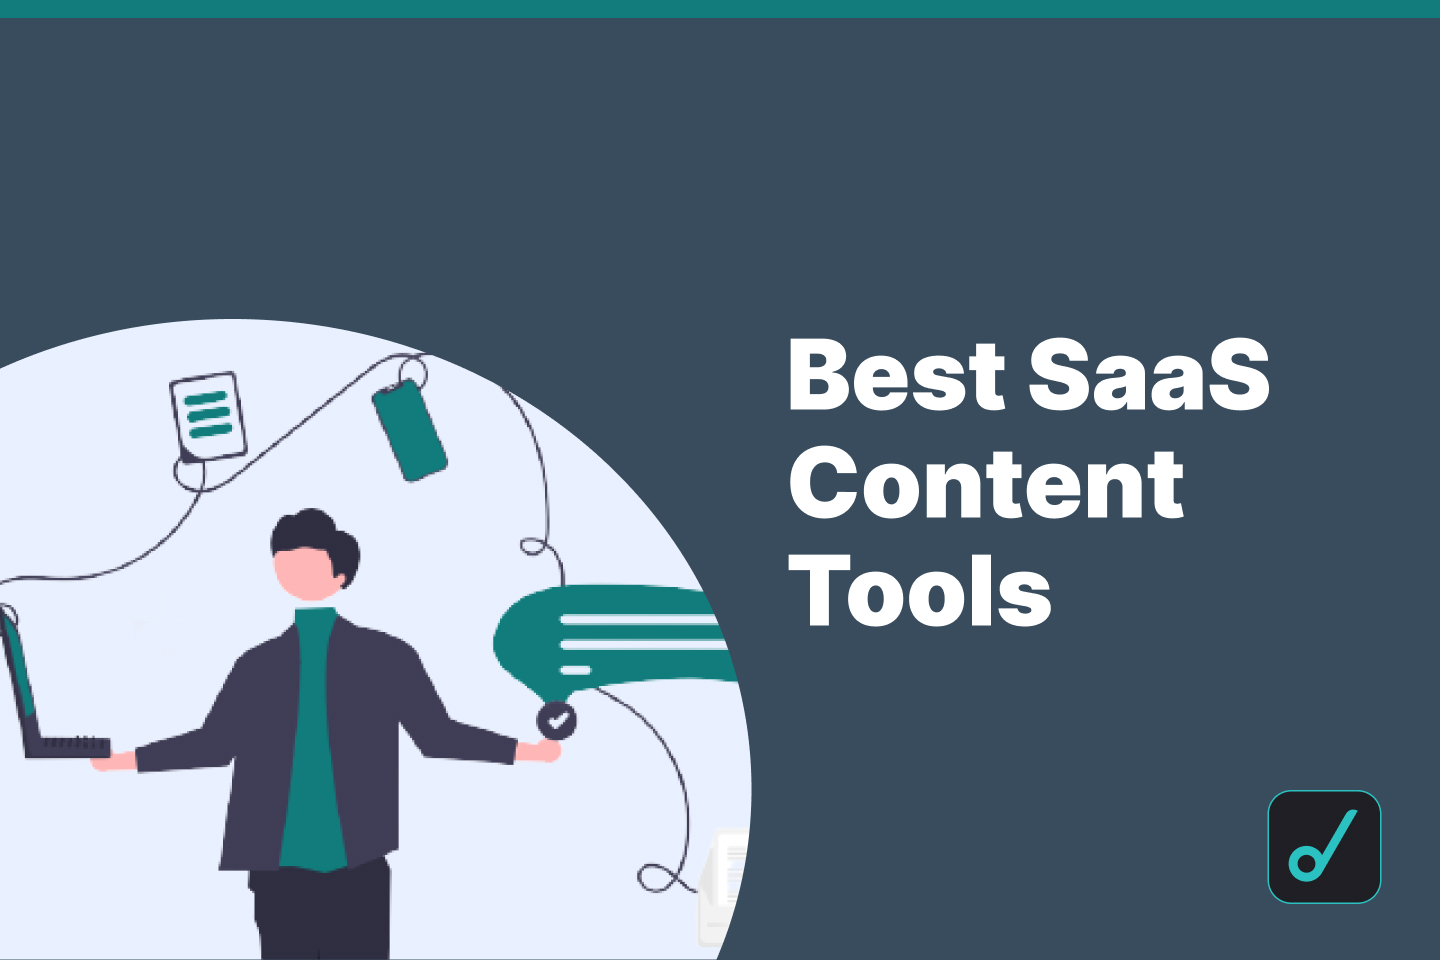 Best SaaS Content Tools